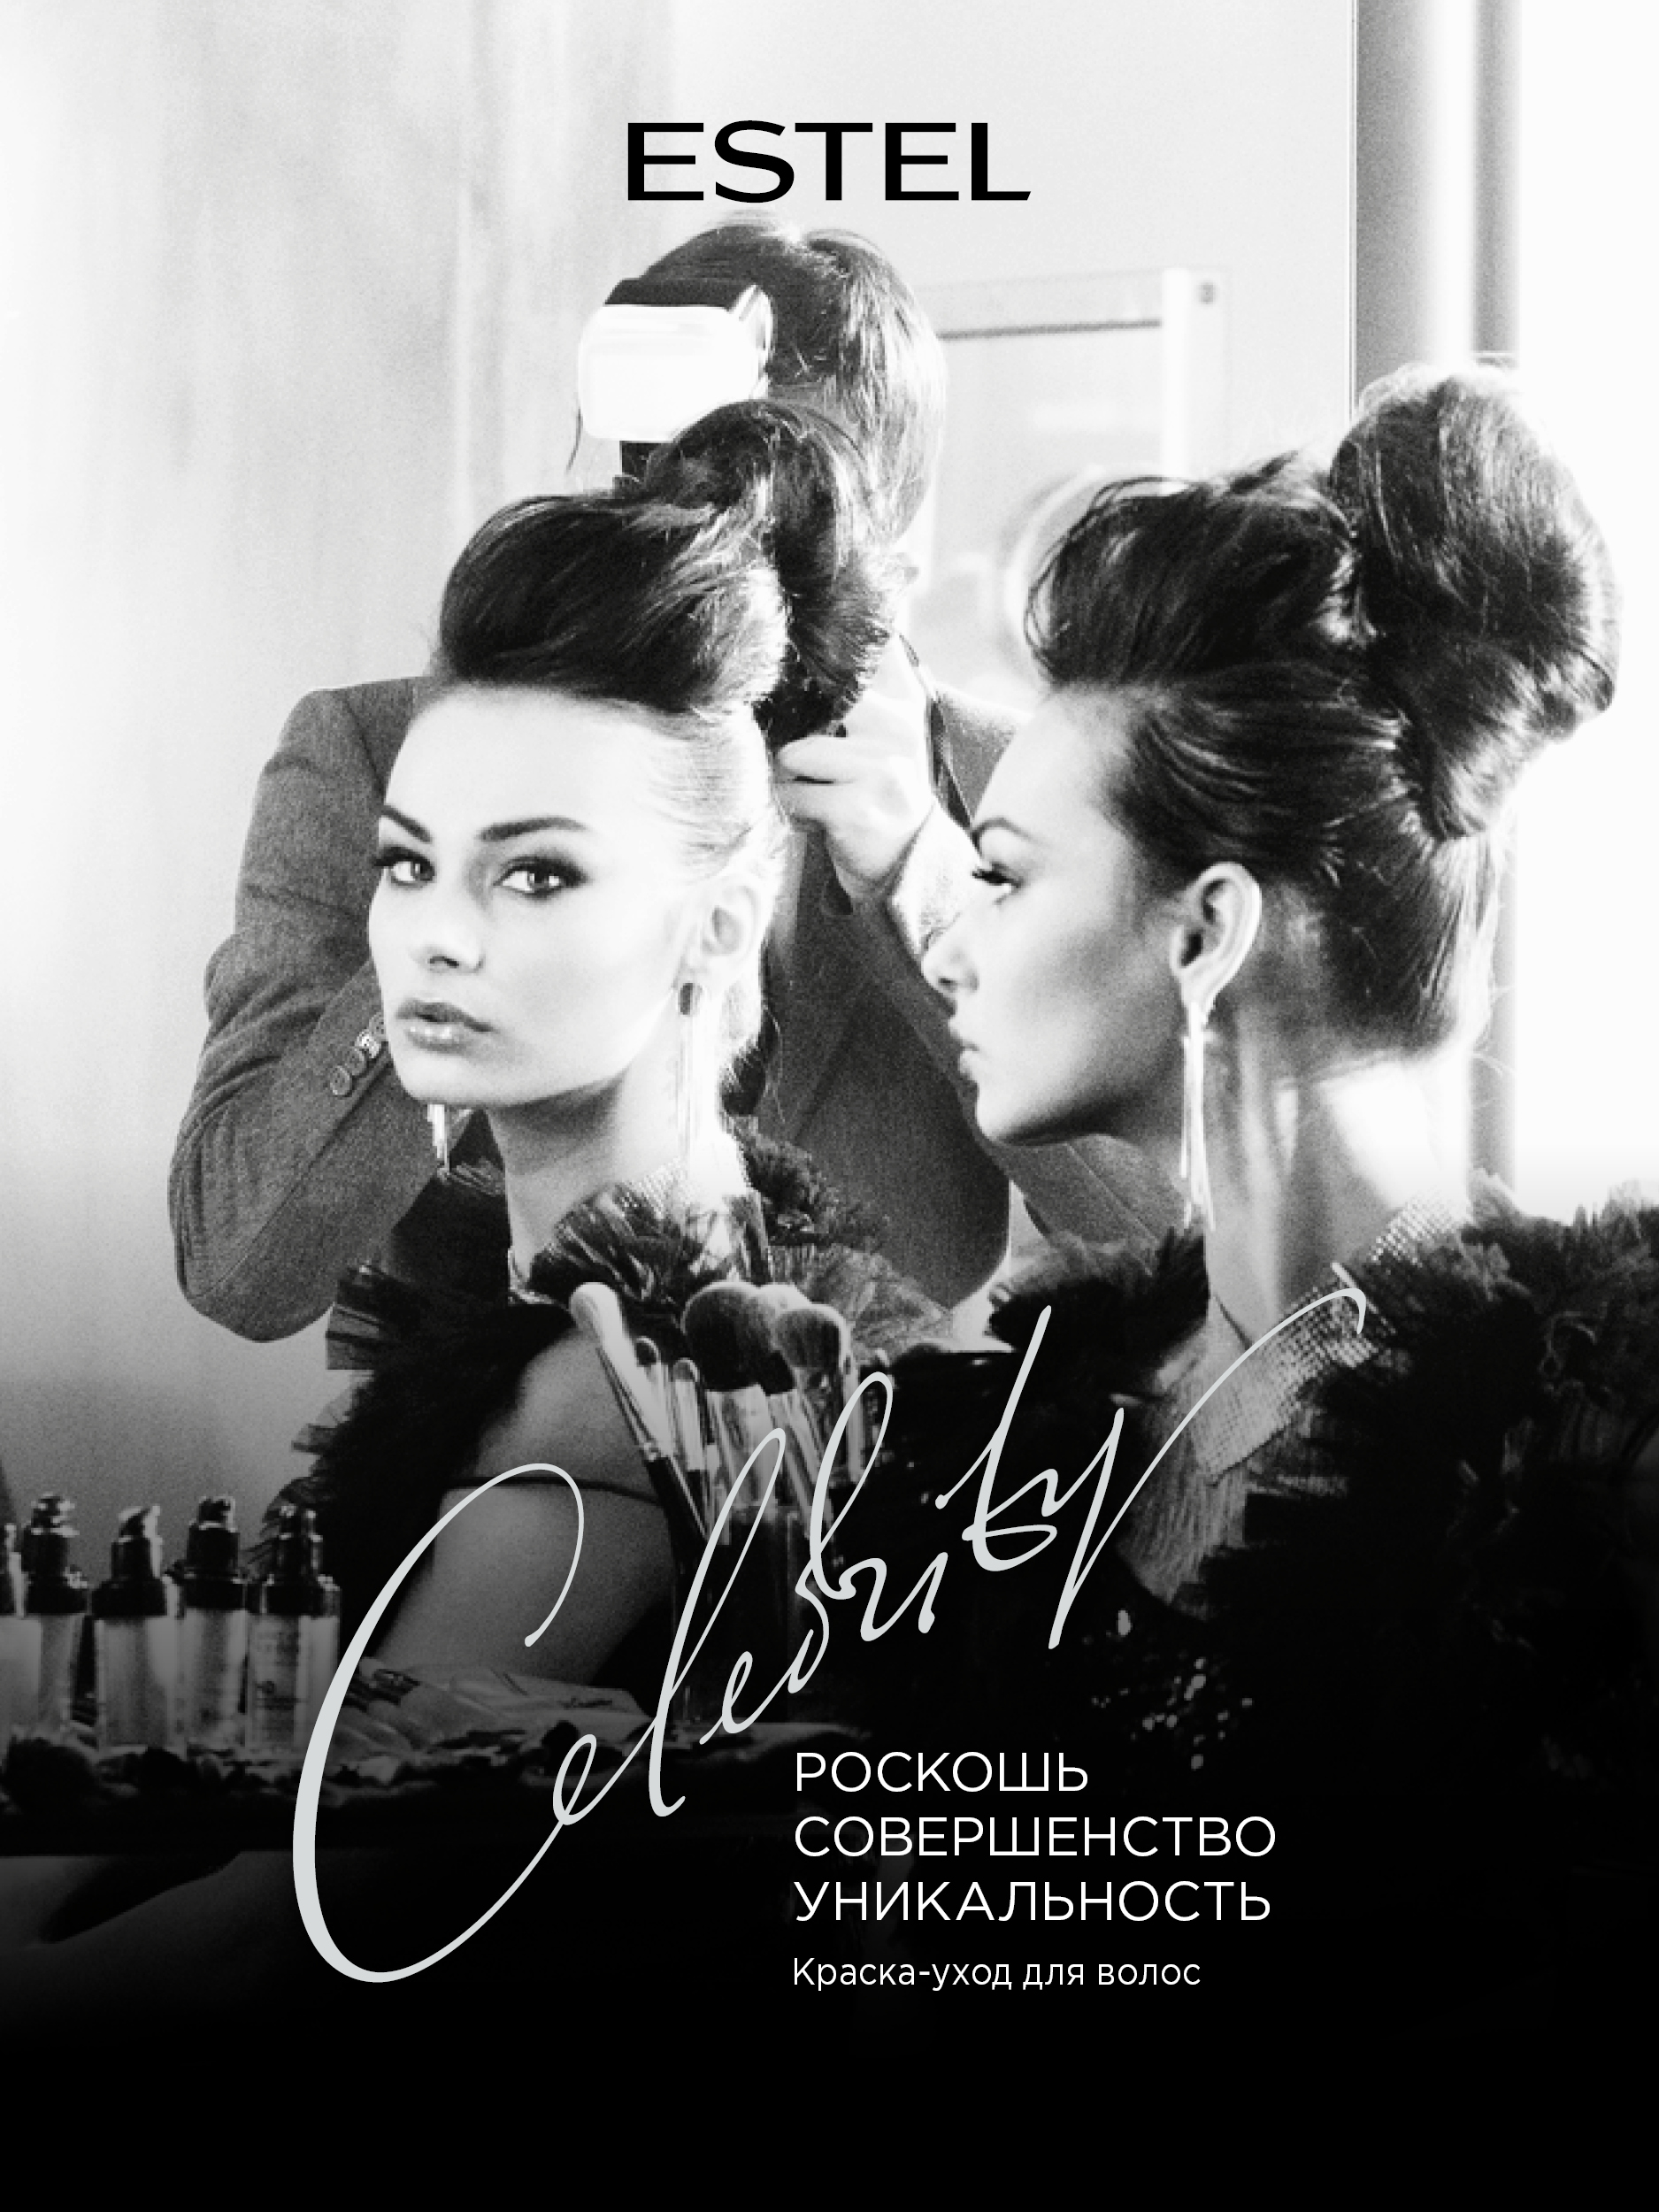 Краска для волос Estel Celebrity тон 6.4 каштан - в интернет-магазине tut-beauty.by